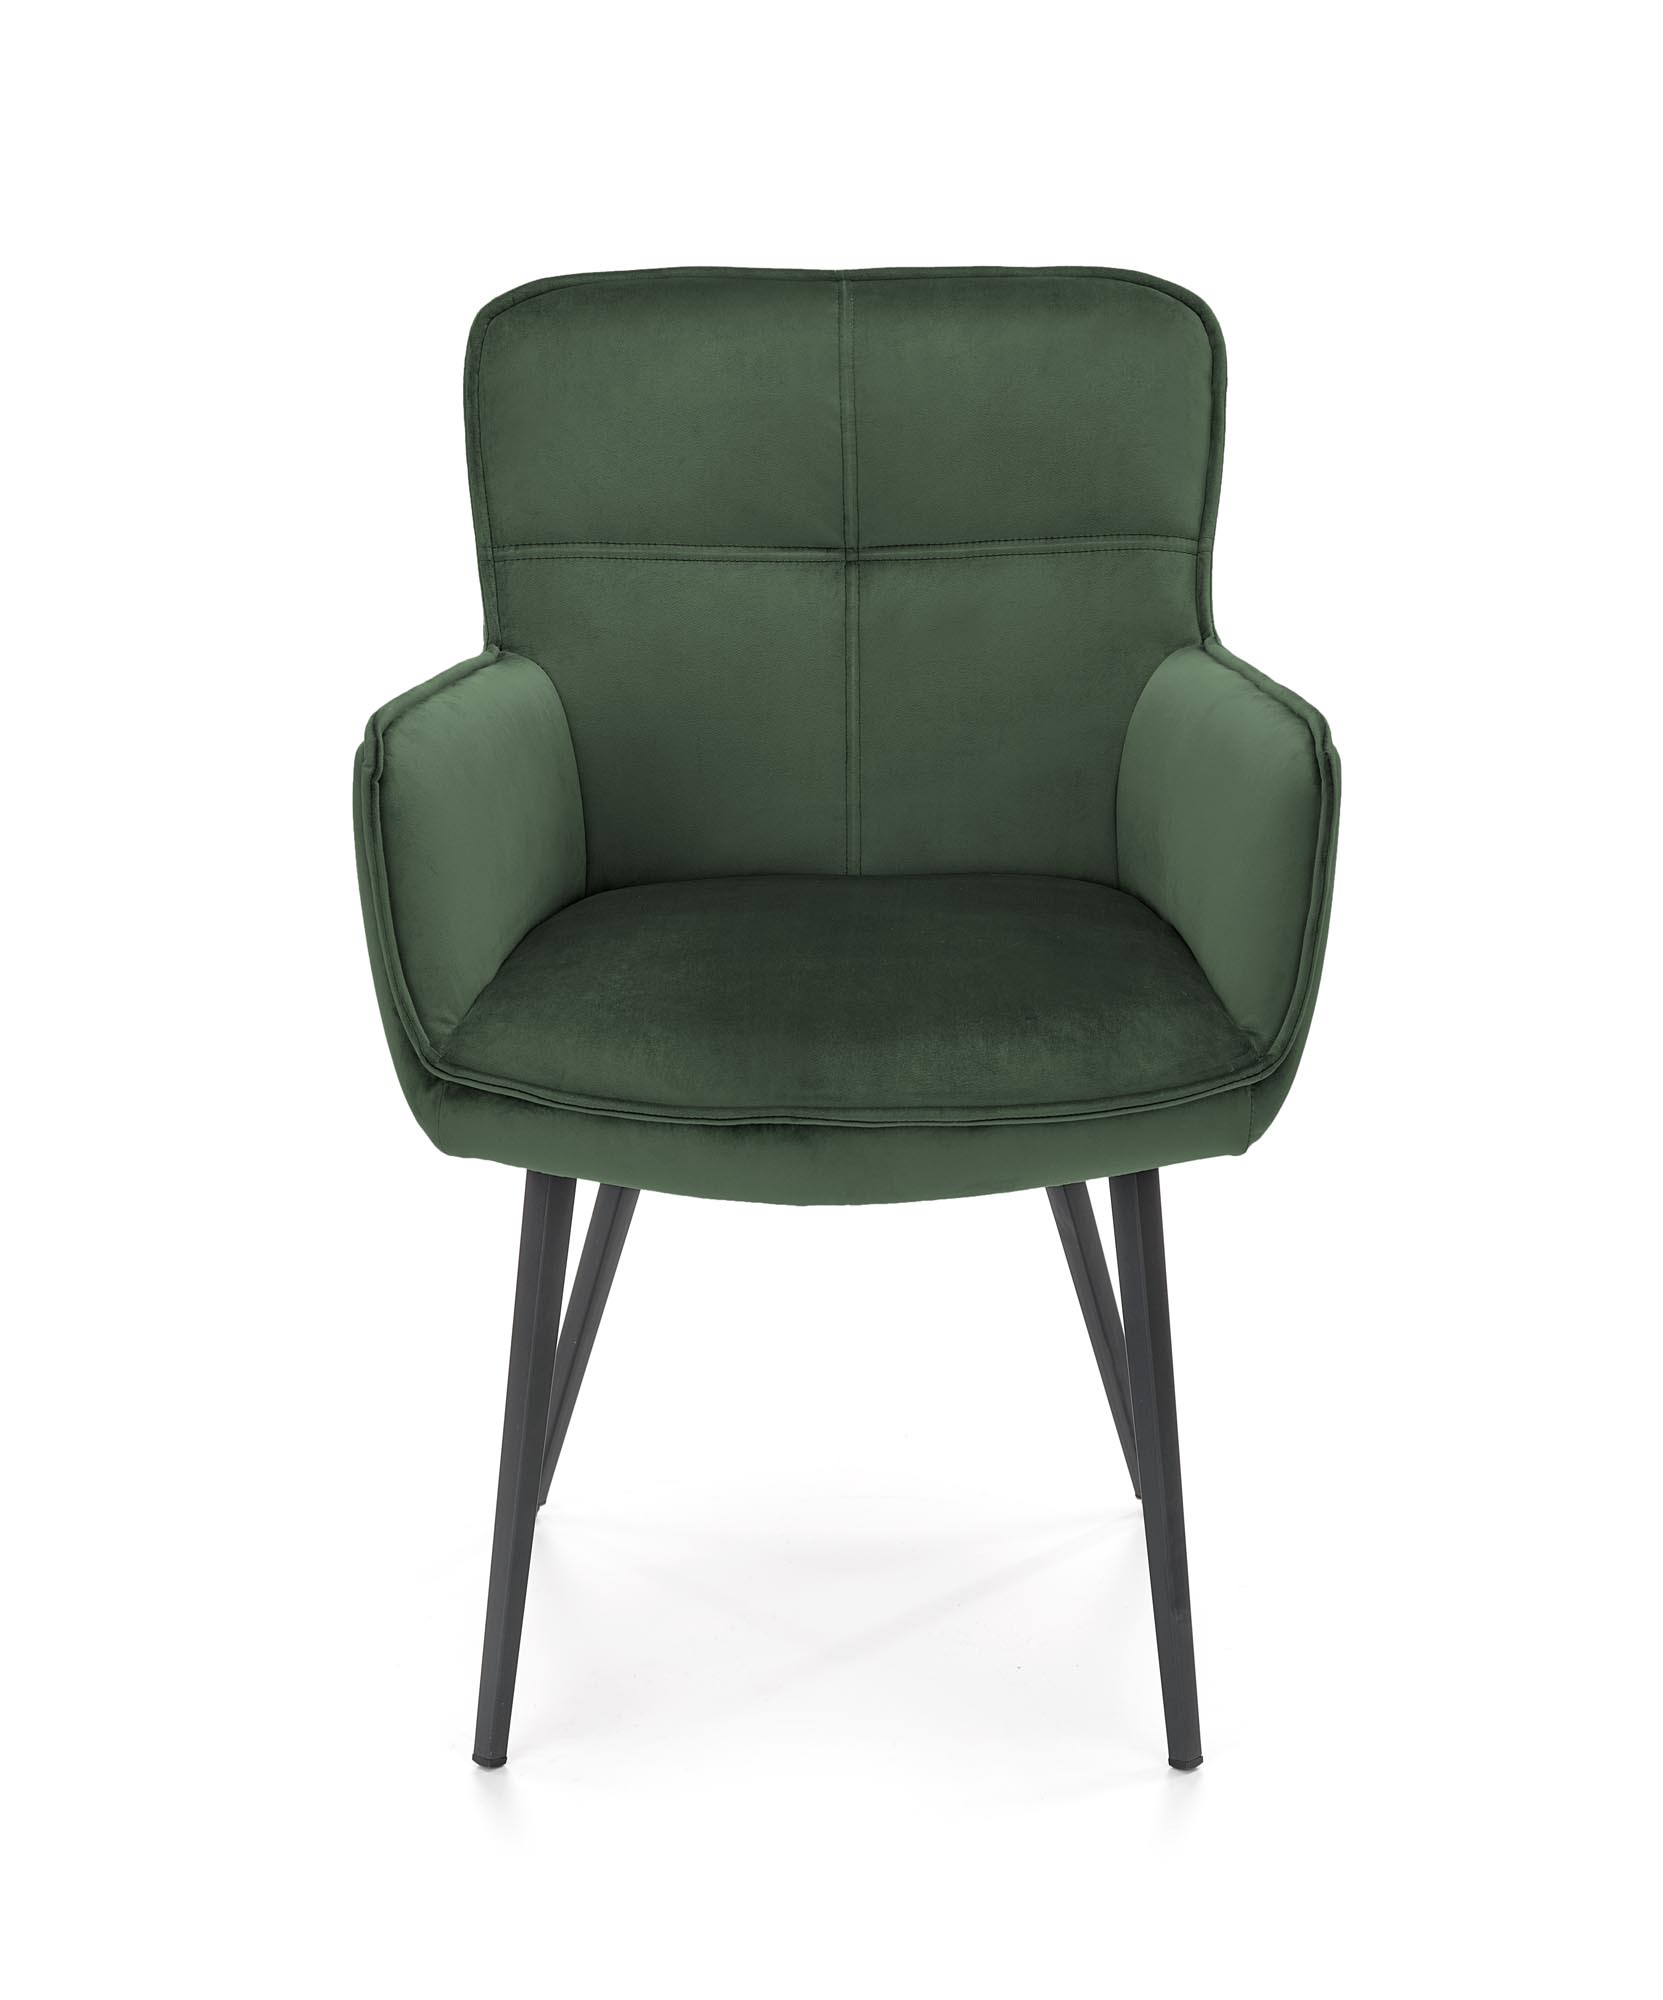 K463 krzesło ciemny zielony k463 krzesło ciemny zielony